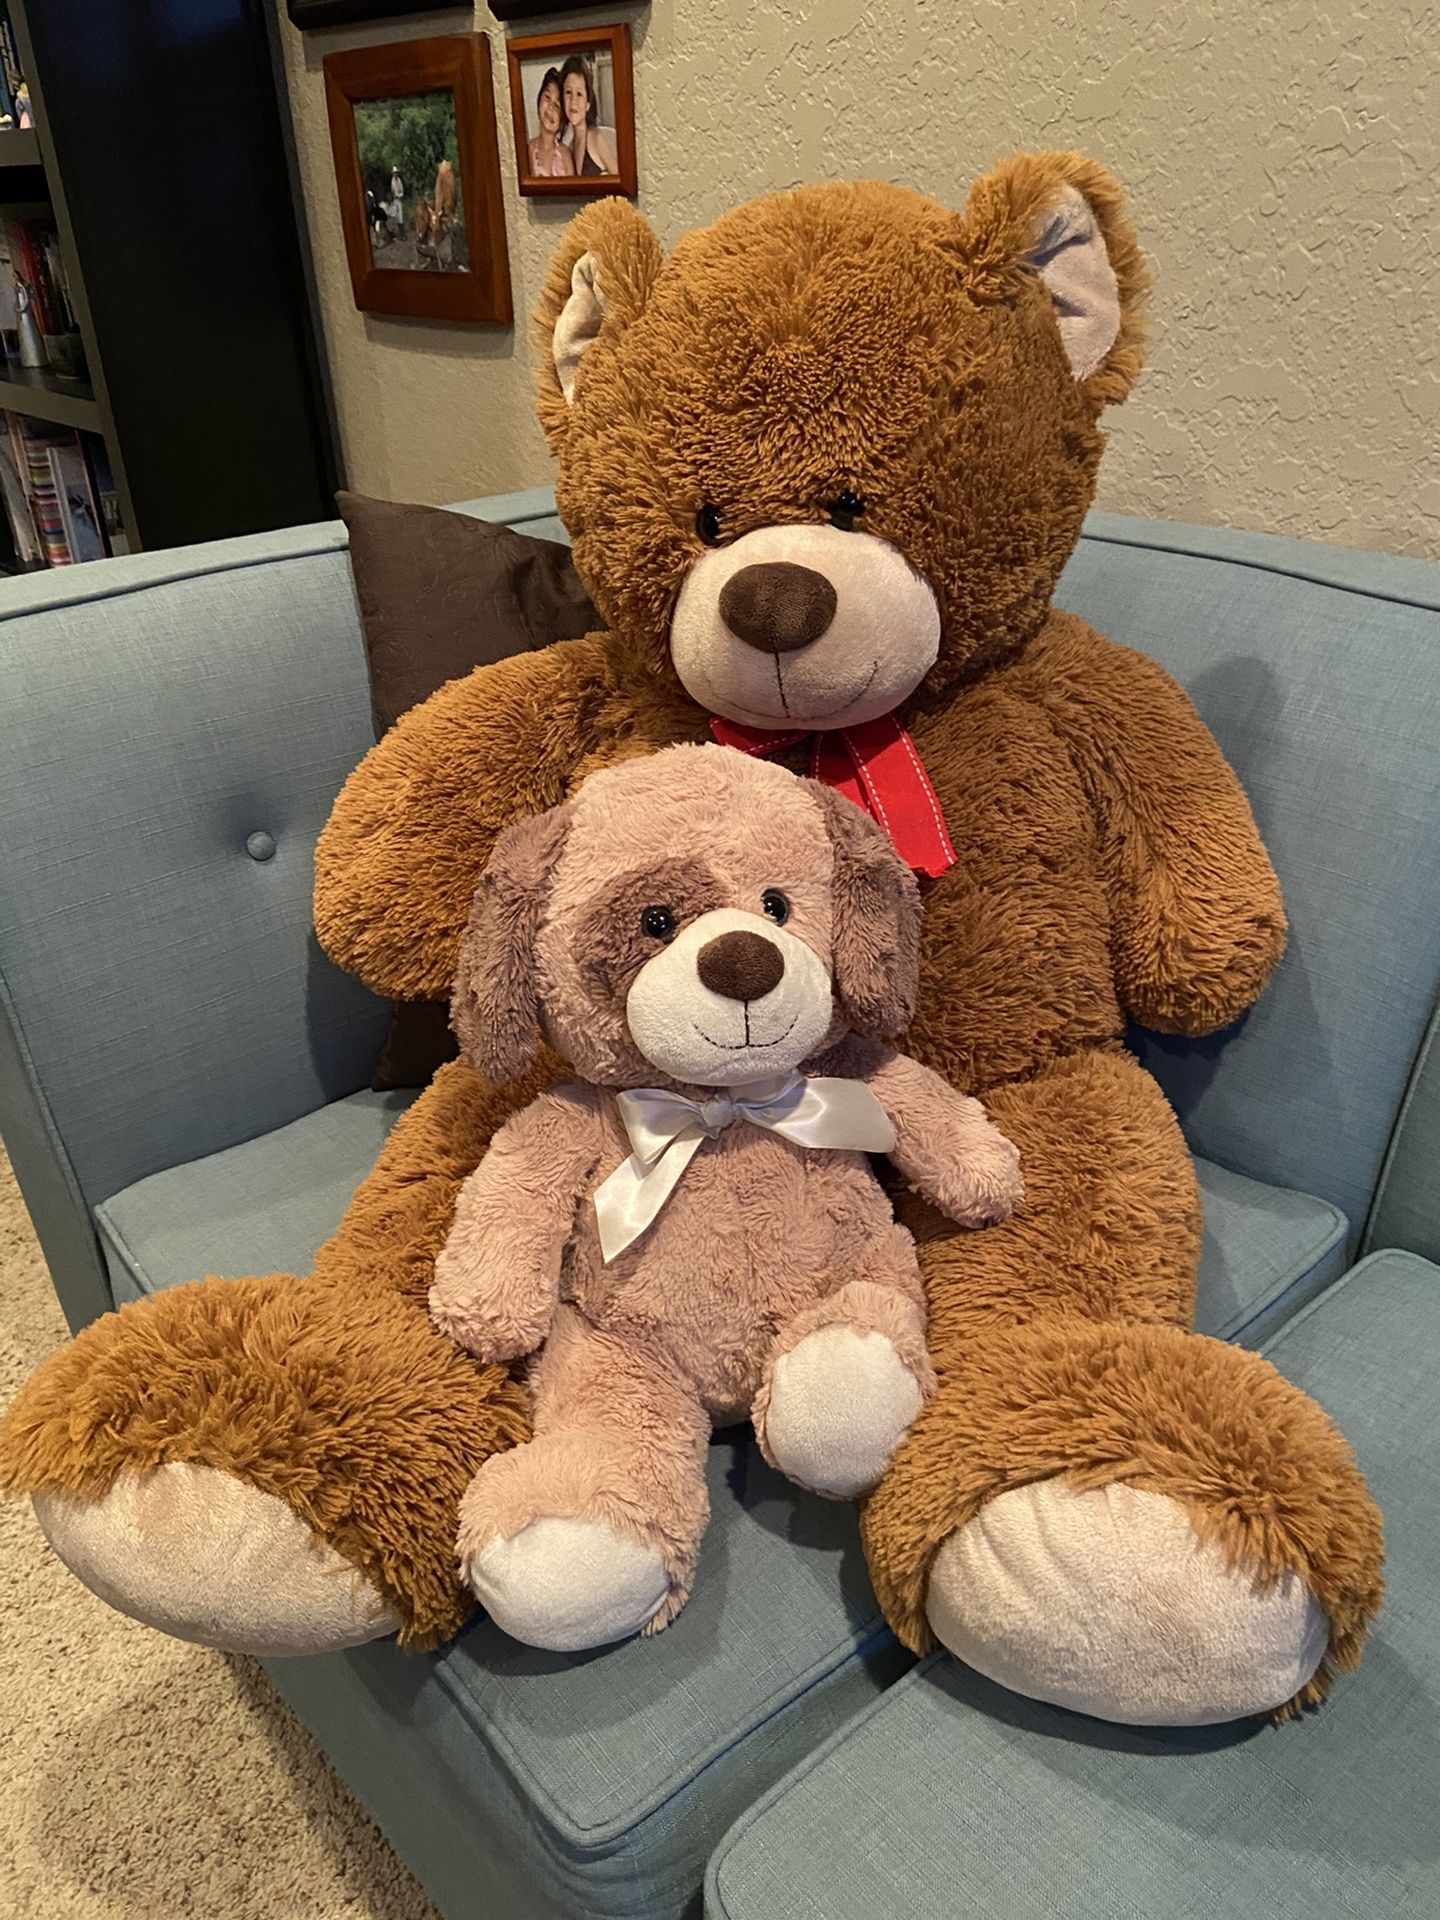 Giant Teddy Bear with small stuffed doggy.